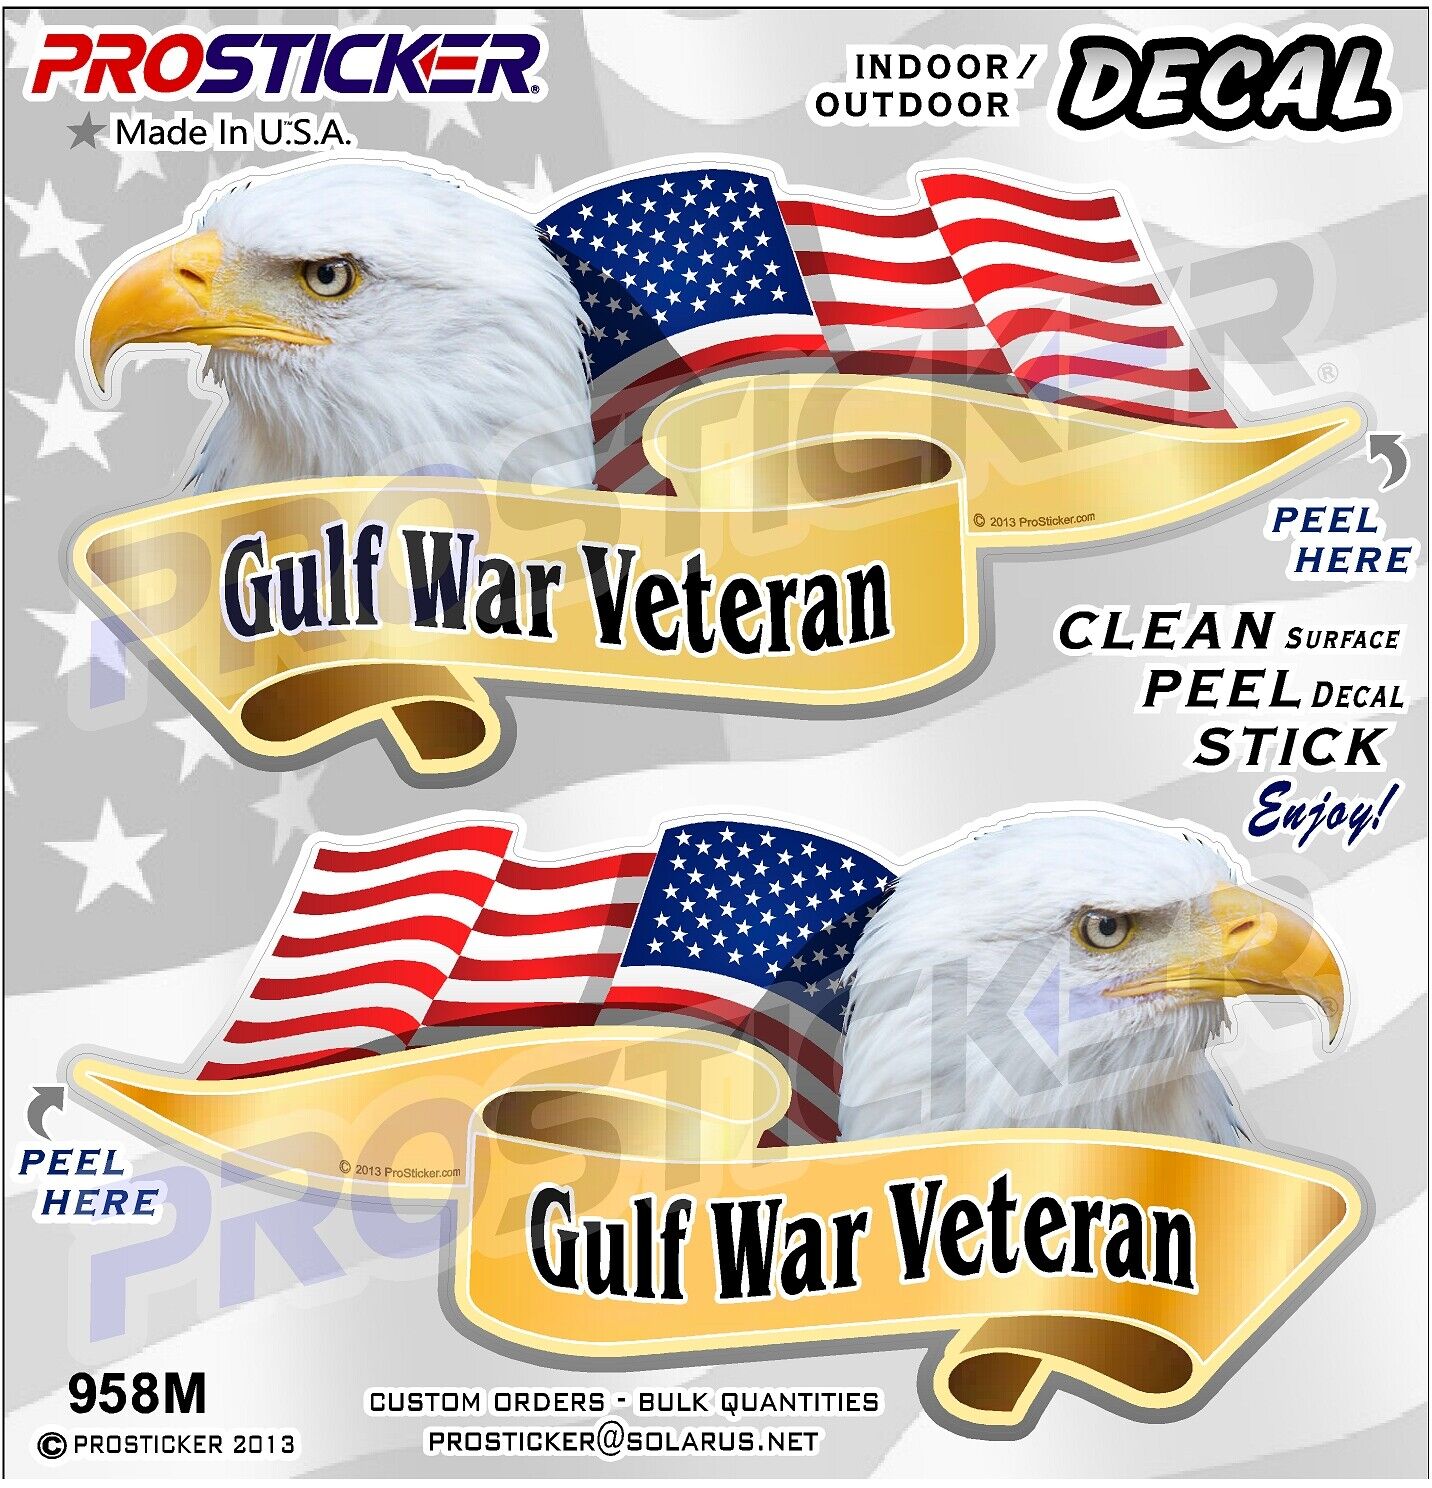  ProSticker 958M (One Pair) American Flag Gulf War Veteran Decals Stickers